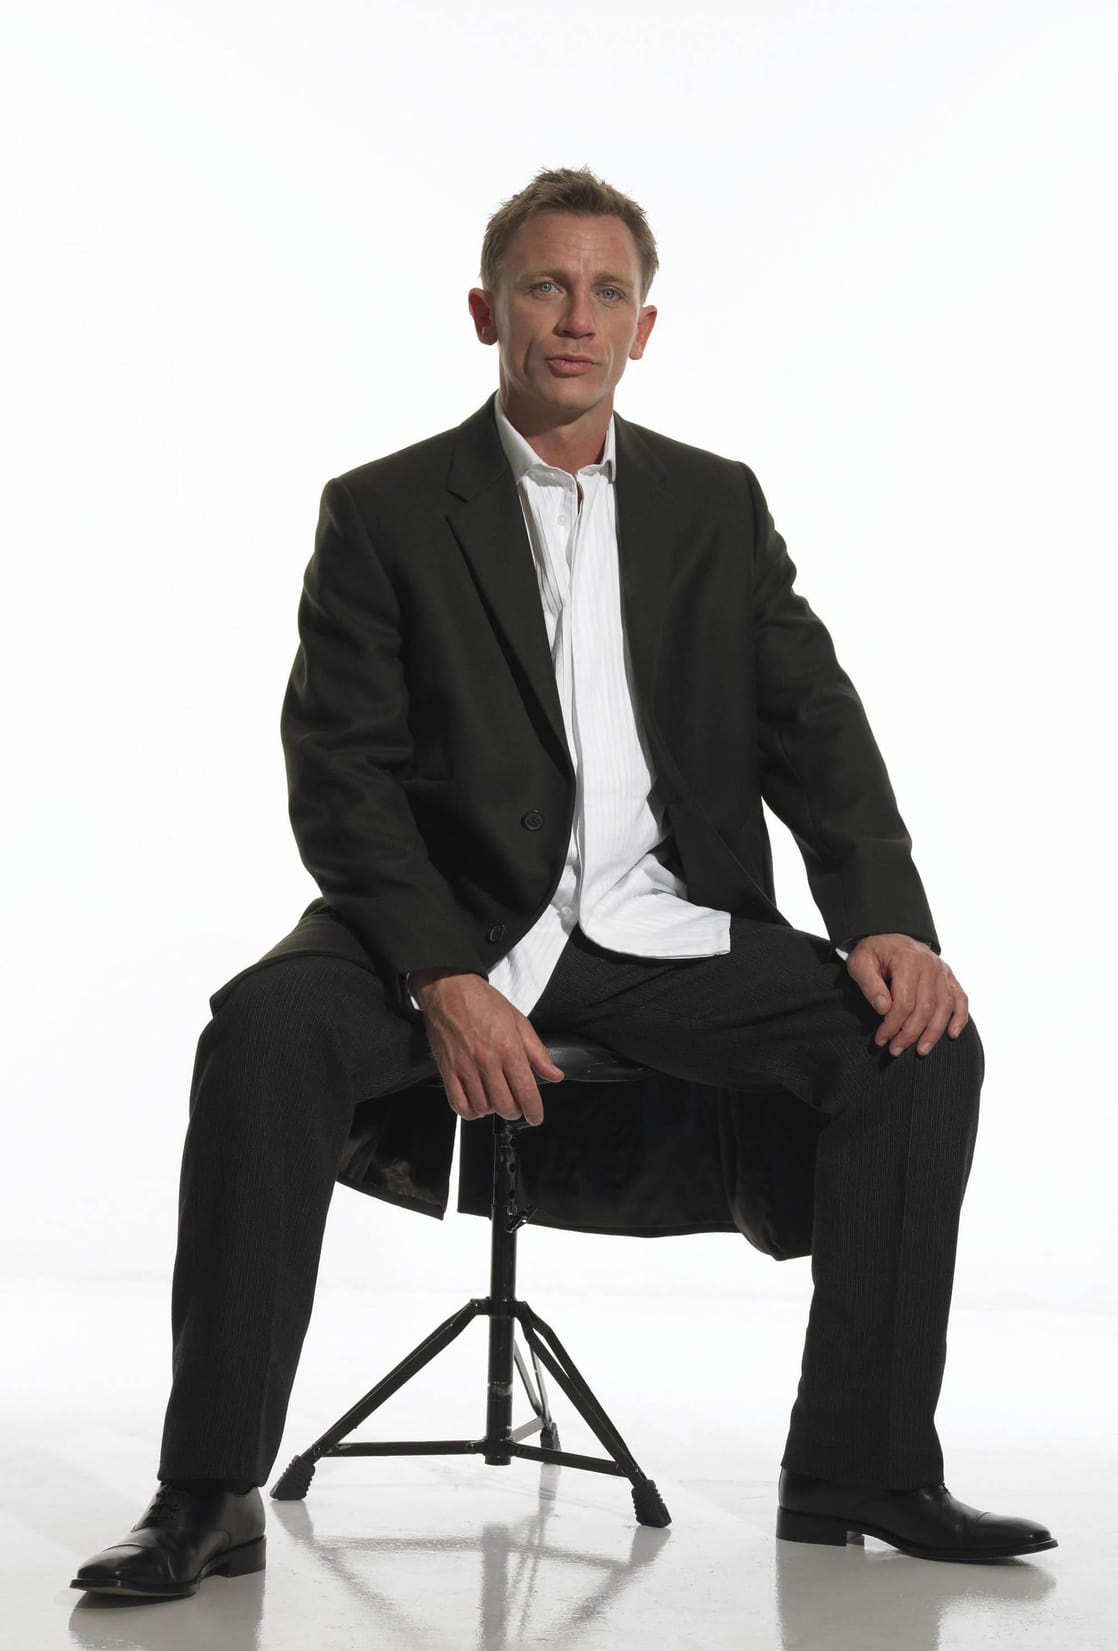 Daniel Craig image